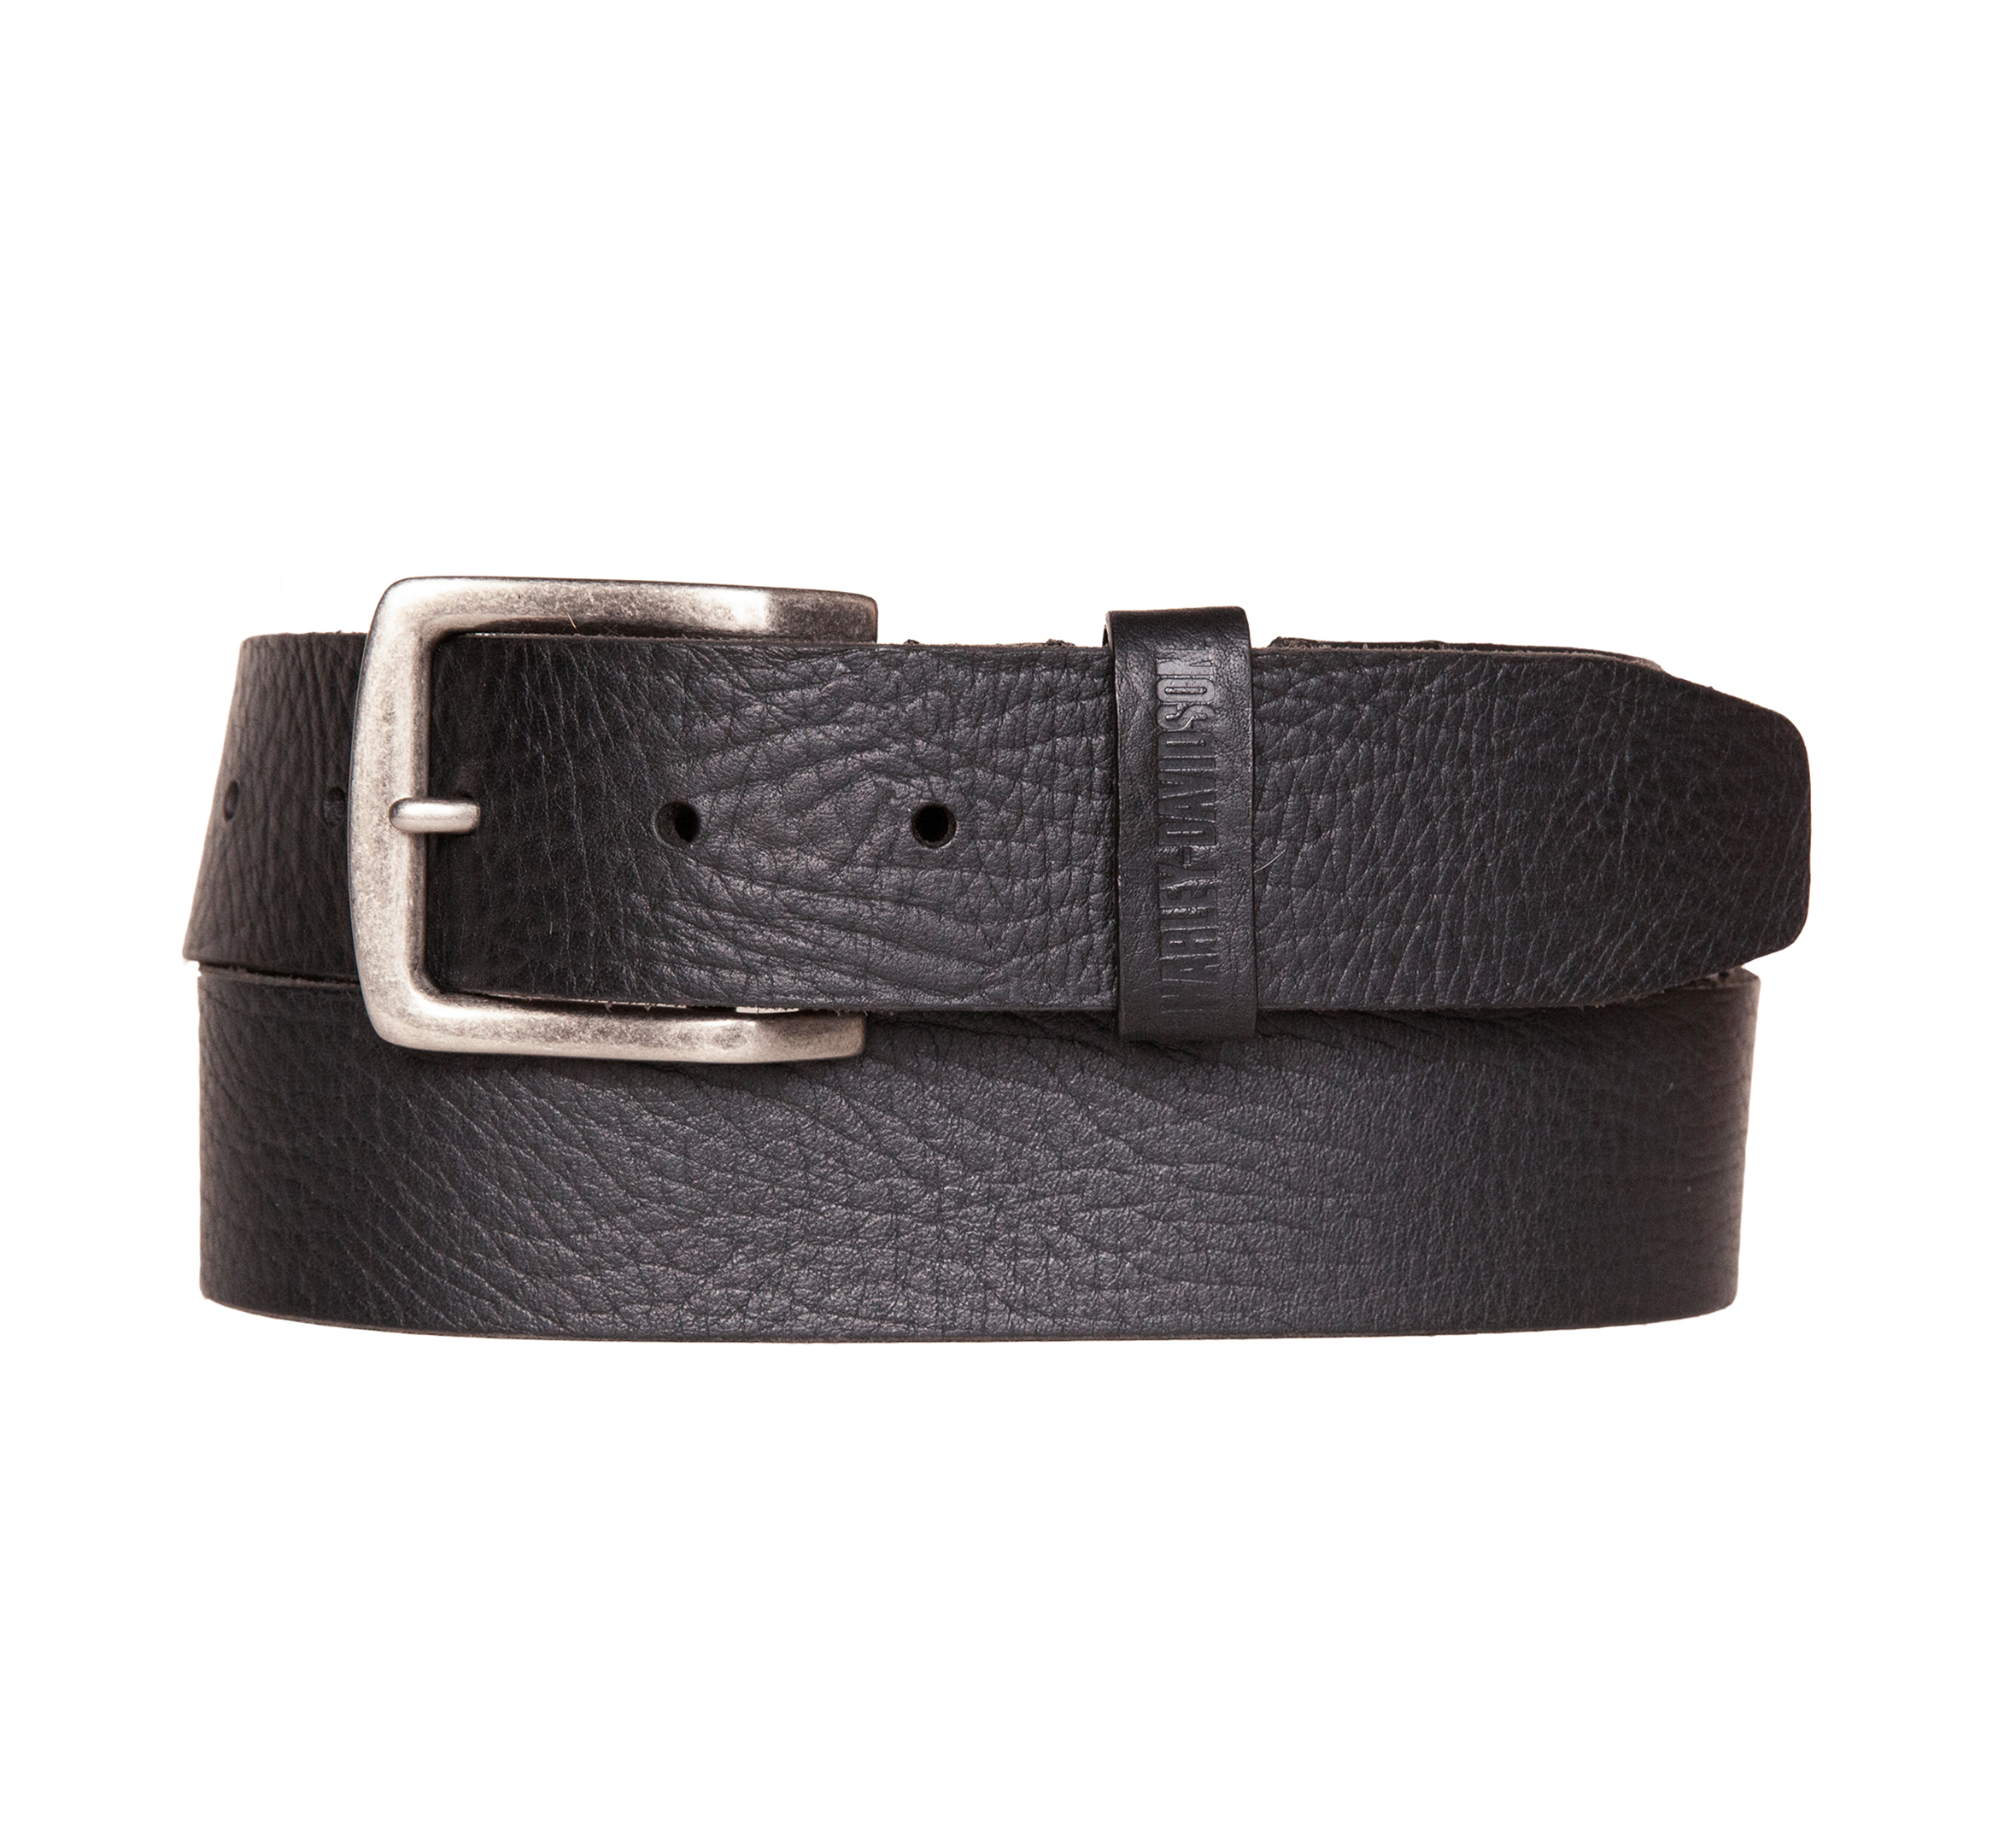 Buy Davidson Designer Leather Belts for Boys and Men Online at